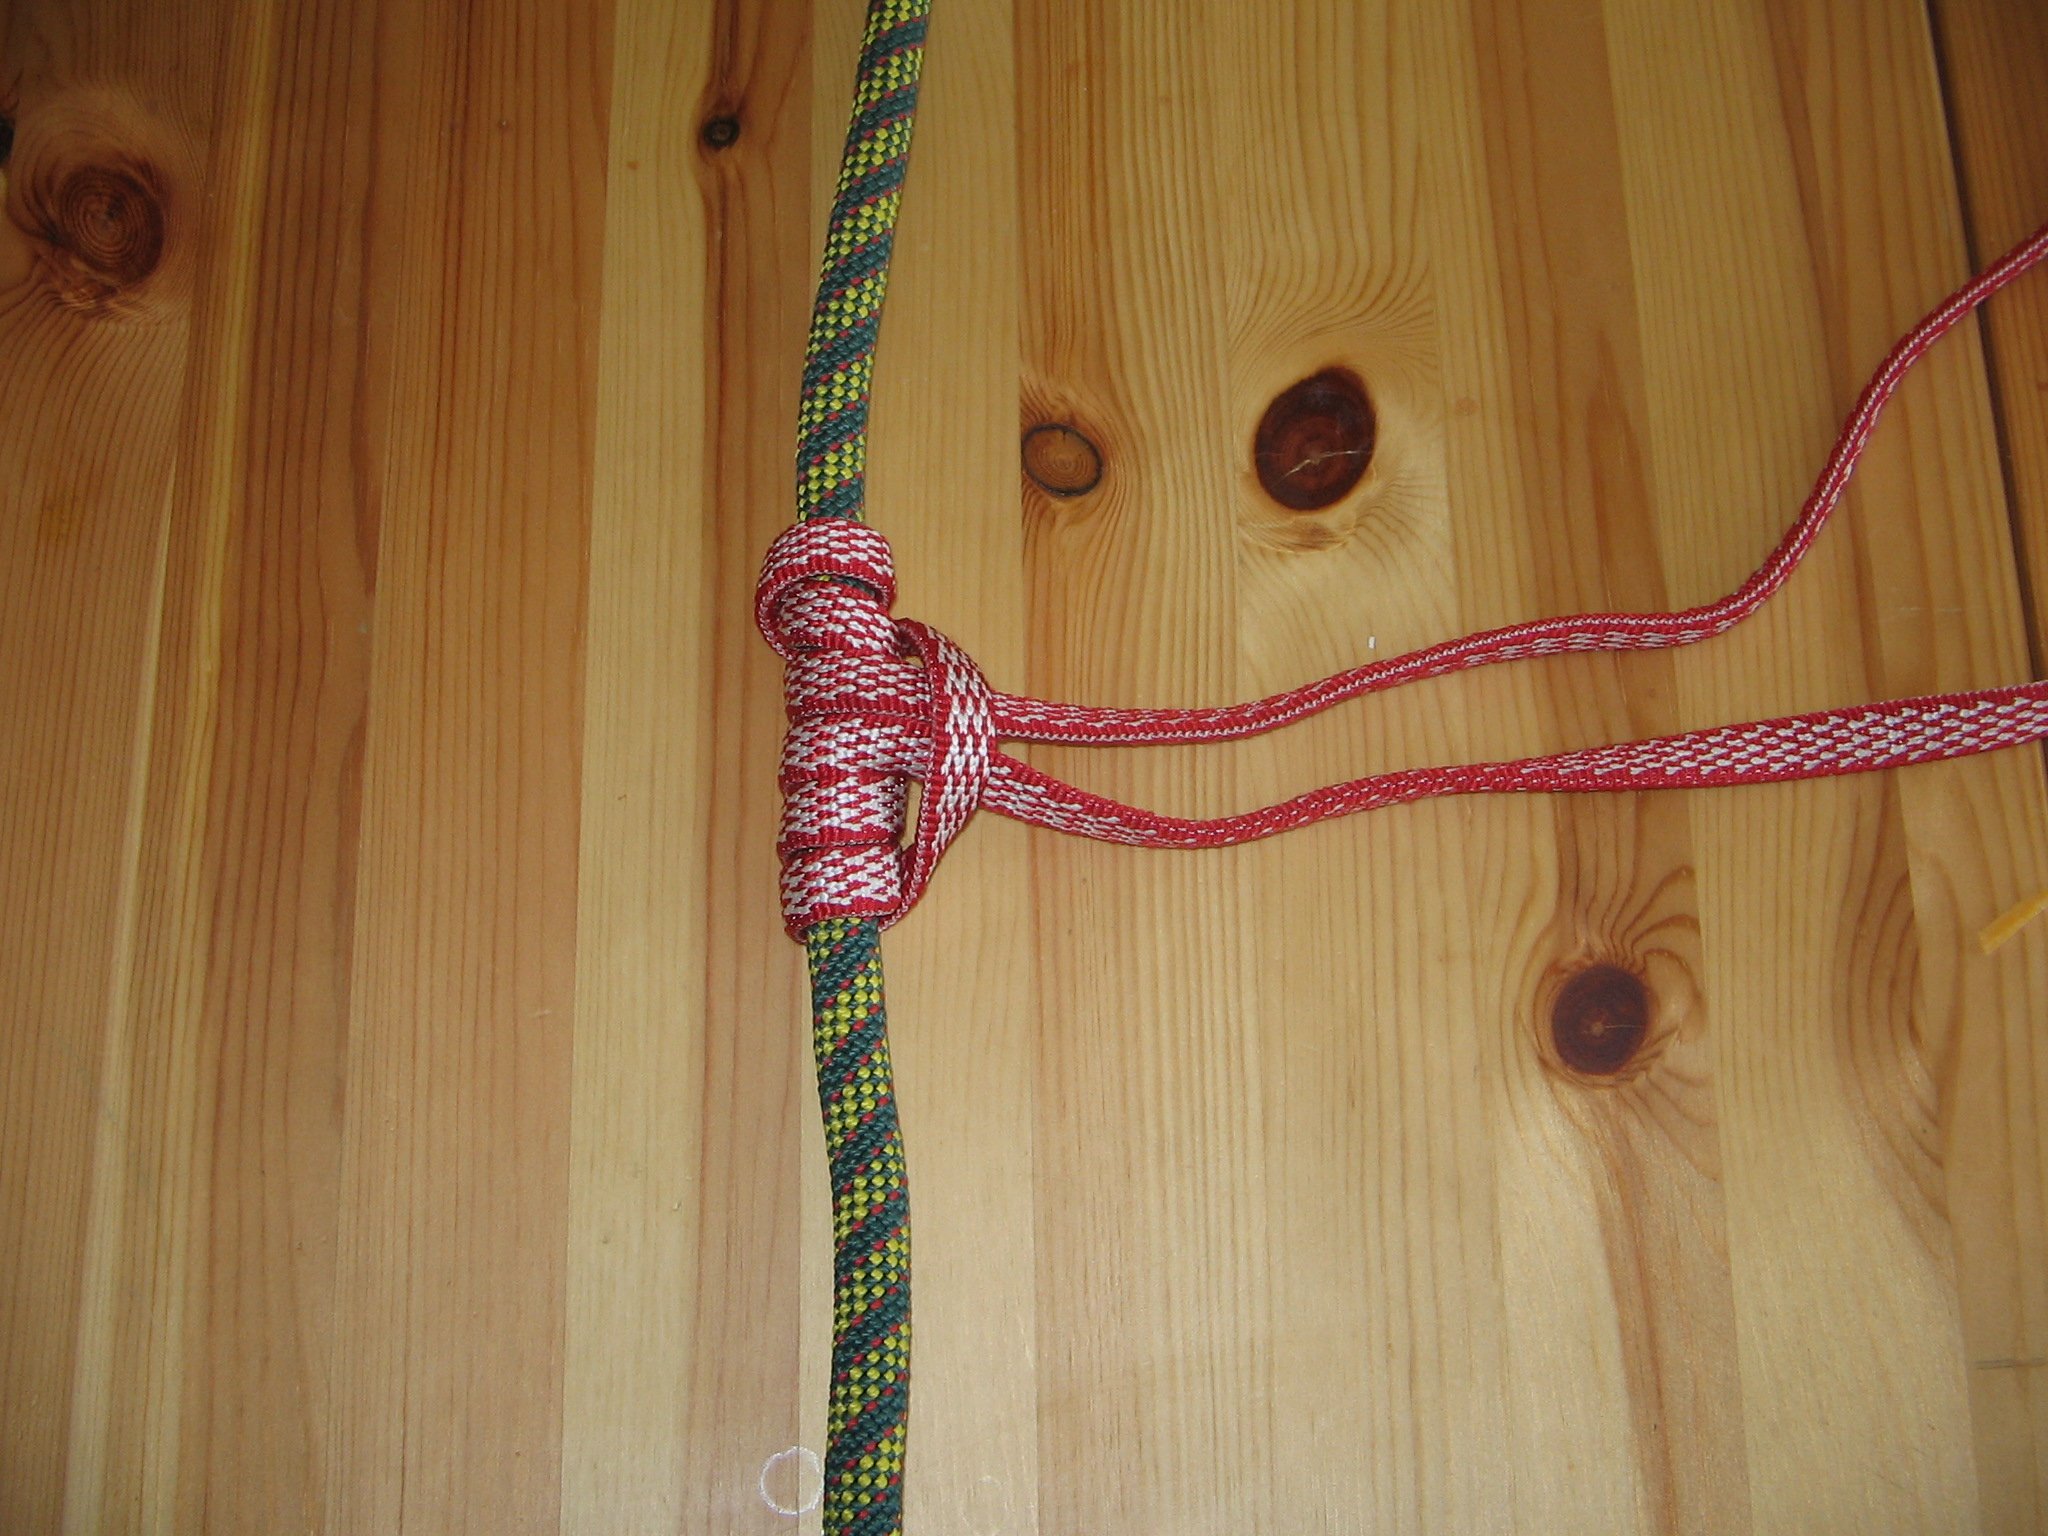 Three turn Prusik knot